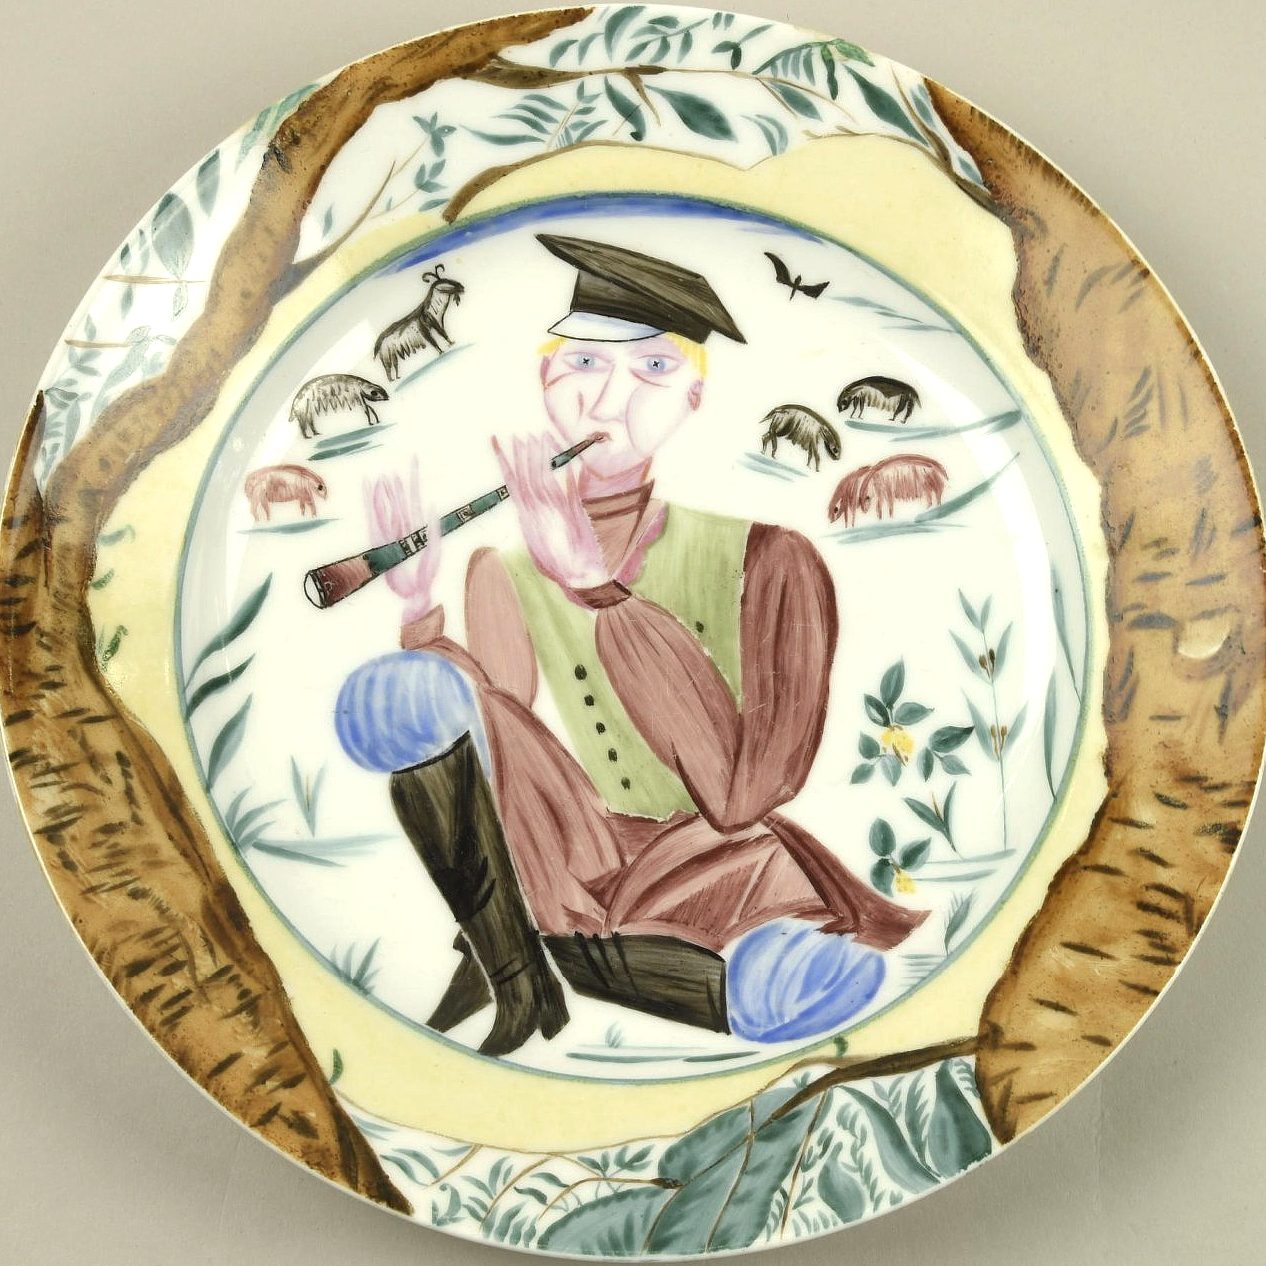 Soviet porcelain plate "Sheppard" Shchekotikhina-Pototskaya